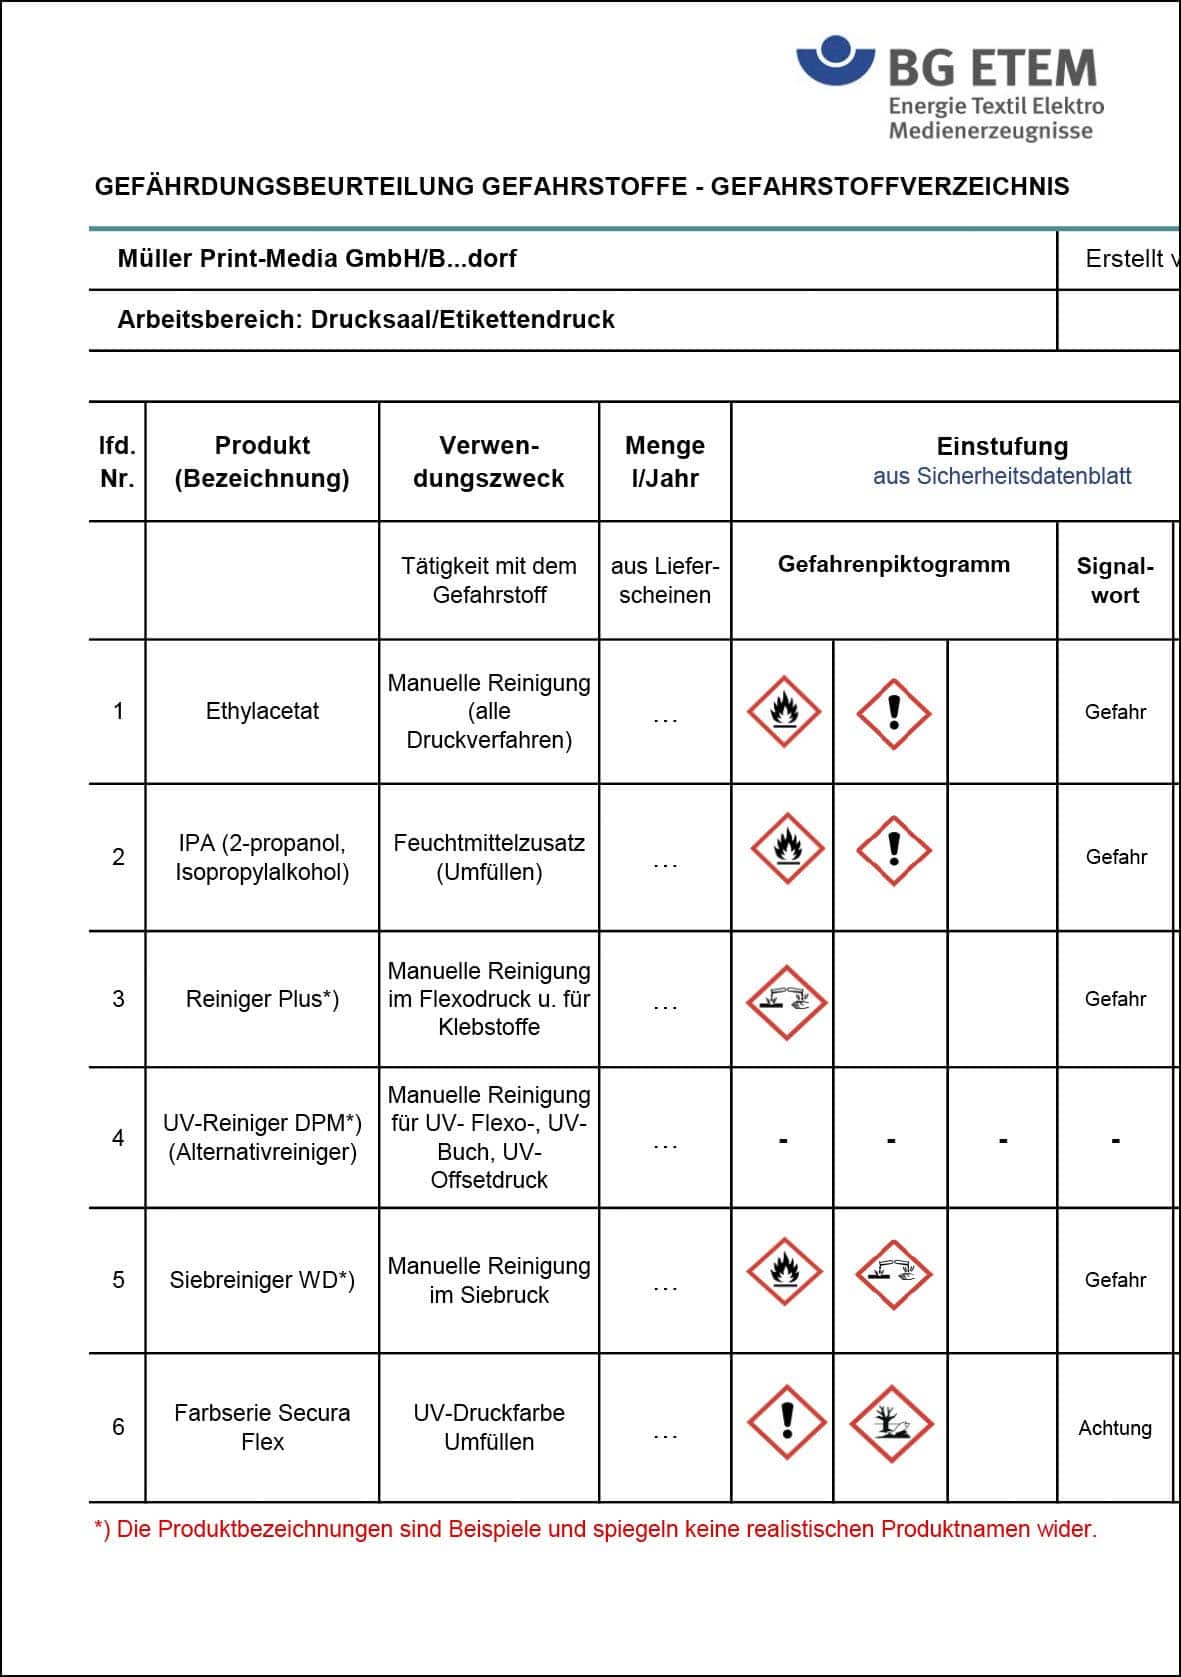 Beispiel für ein Gefahrstoff-Praxis-Anwendungsformular (Quelle: BG ETEM)